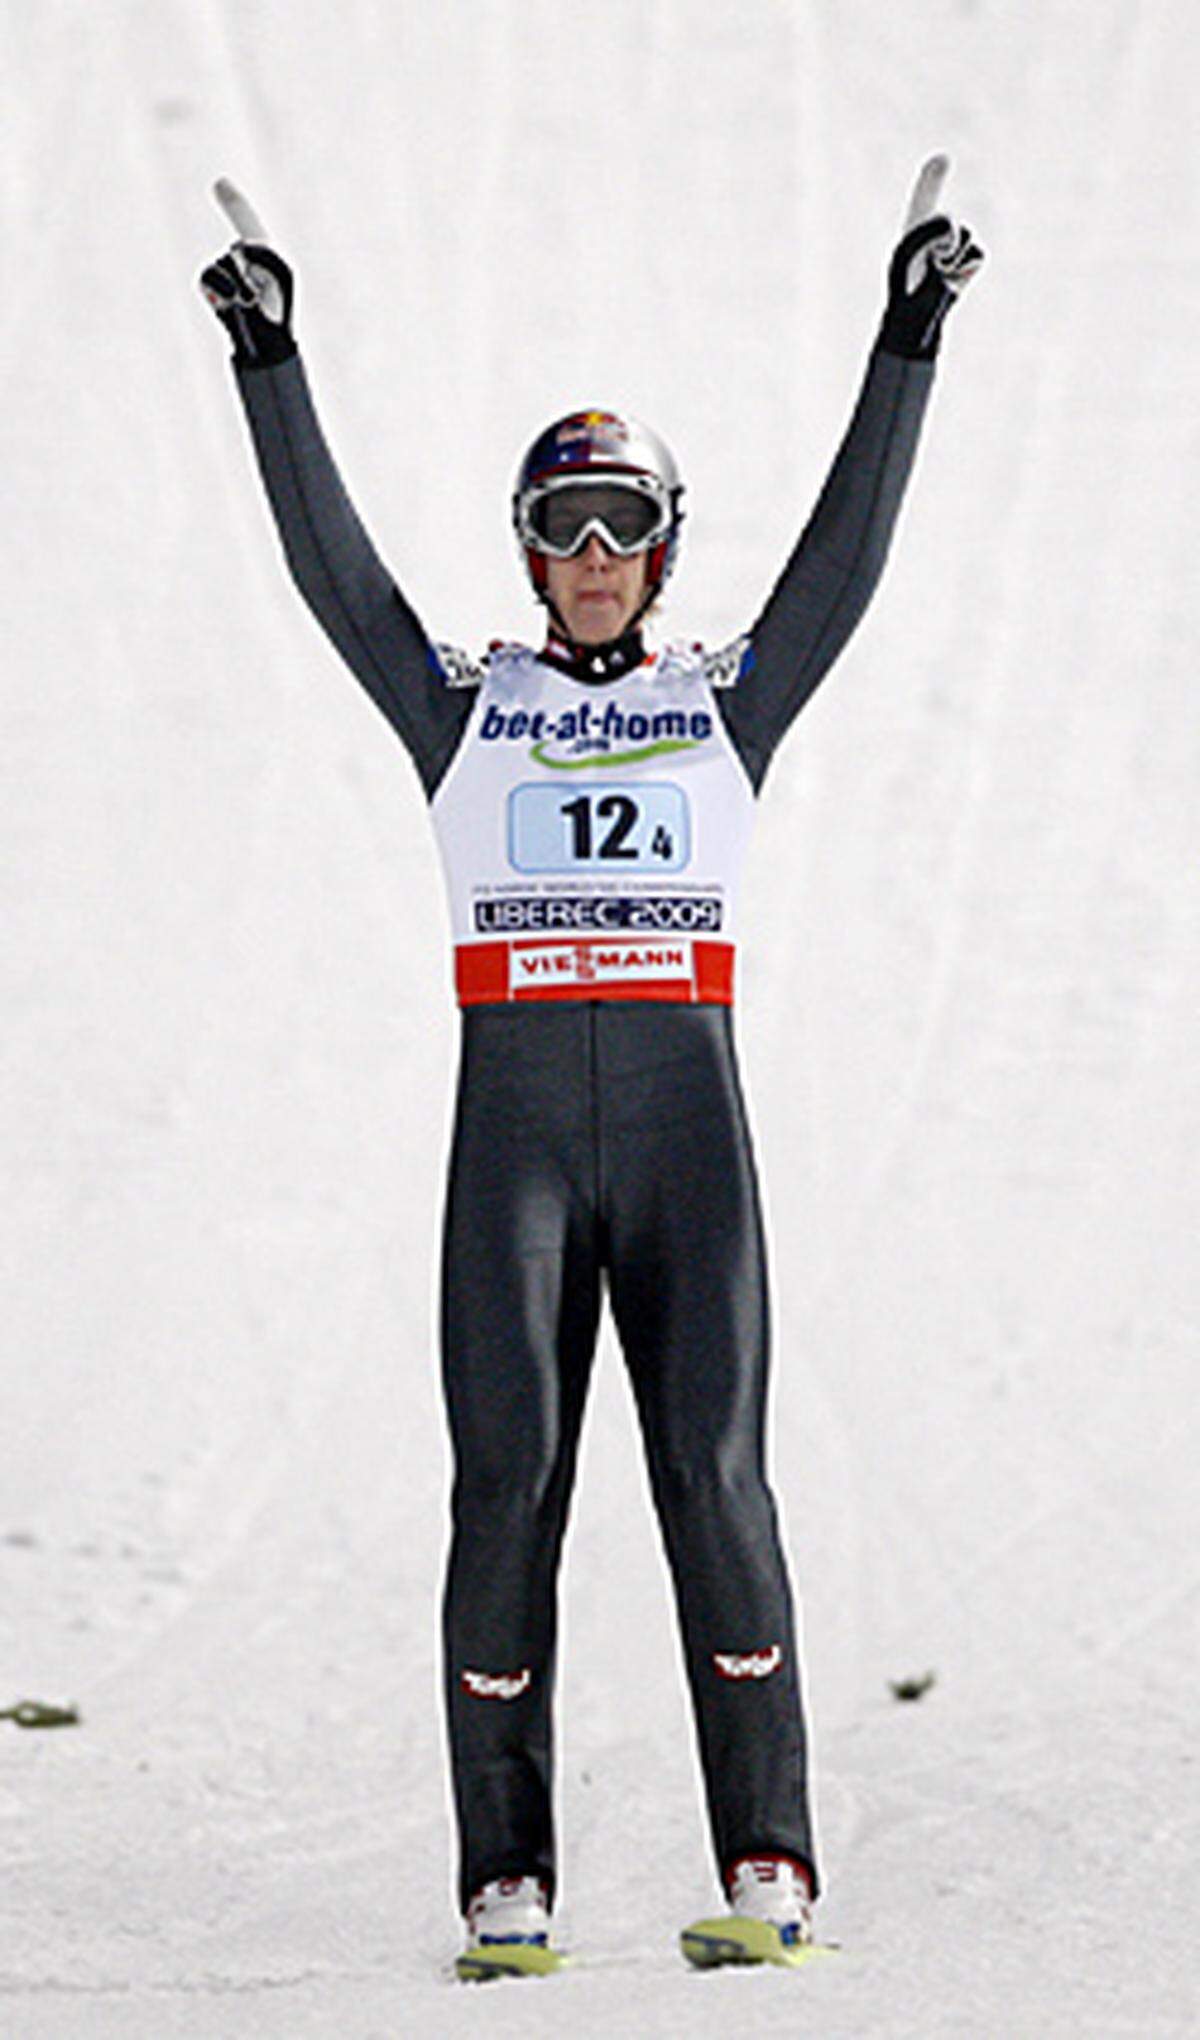 Mit Silber auf der Normalschanze 2009 und Gold in den Mannschaftsbewerben 2007 und 2009 hielt Schlierenzauer vor Oslo schon bei zwei Goldenen und einer Silbermedaille. Aus Norwegen brachte der Tiroler dann noch einmal drei Goldmedaillen (zweimal Team sowie Großschanze) nach Hause. Das ergibt 5 x Gold und 1 x Silber.